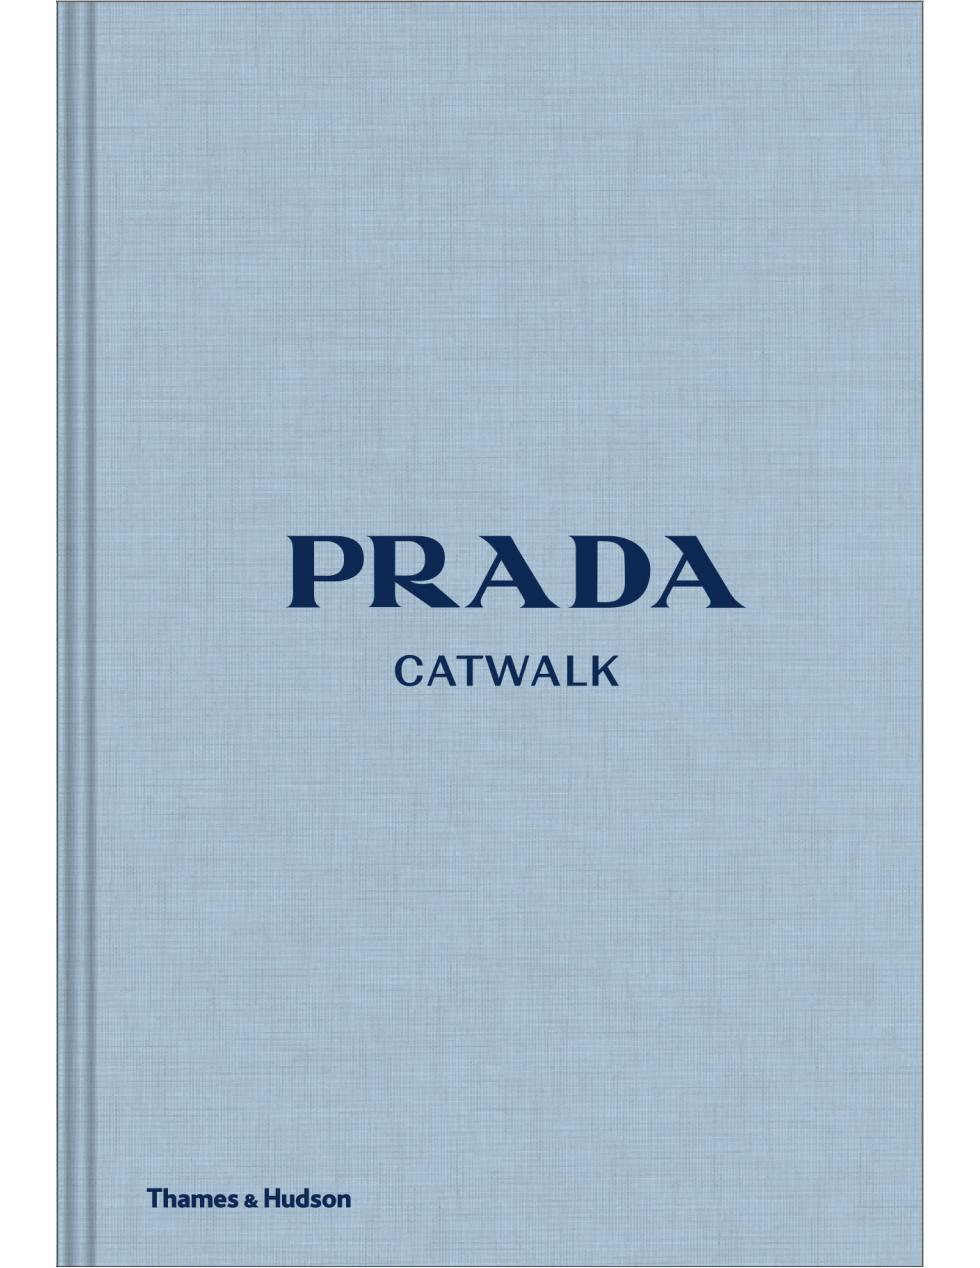 Prada : Catwalk